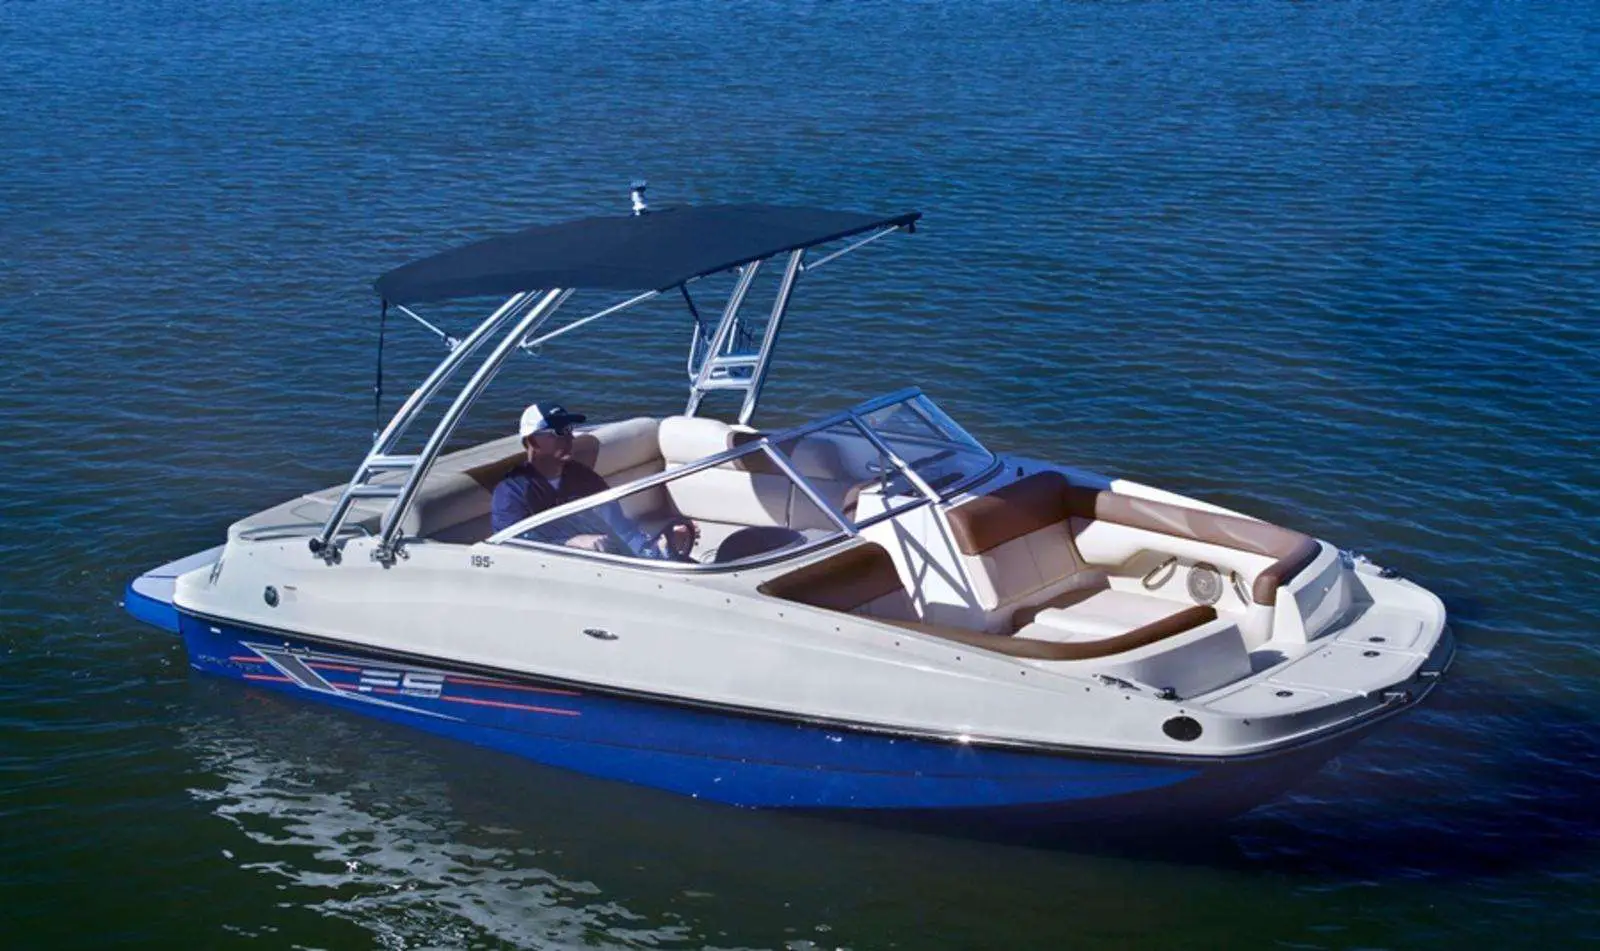 2015 Bayliner 195 Deck Boat Review